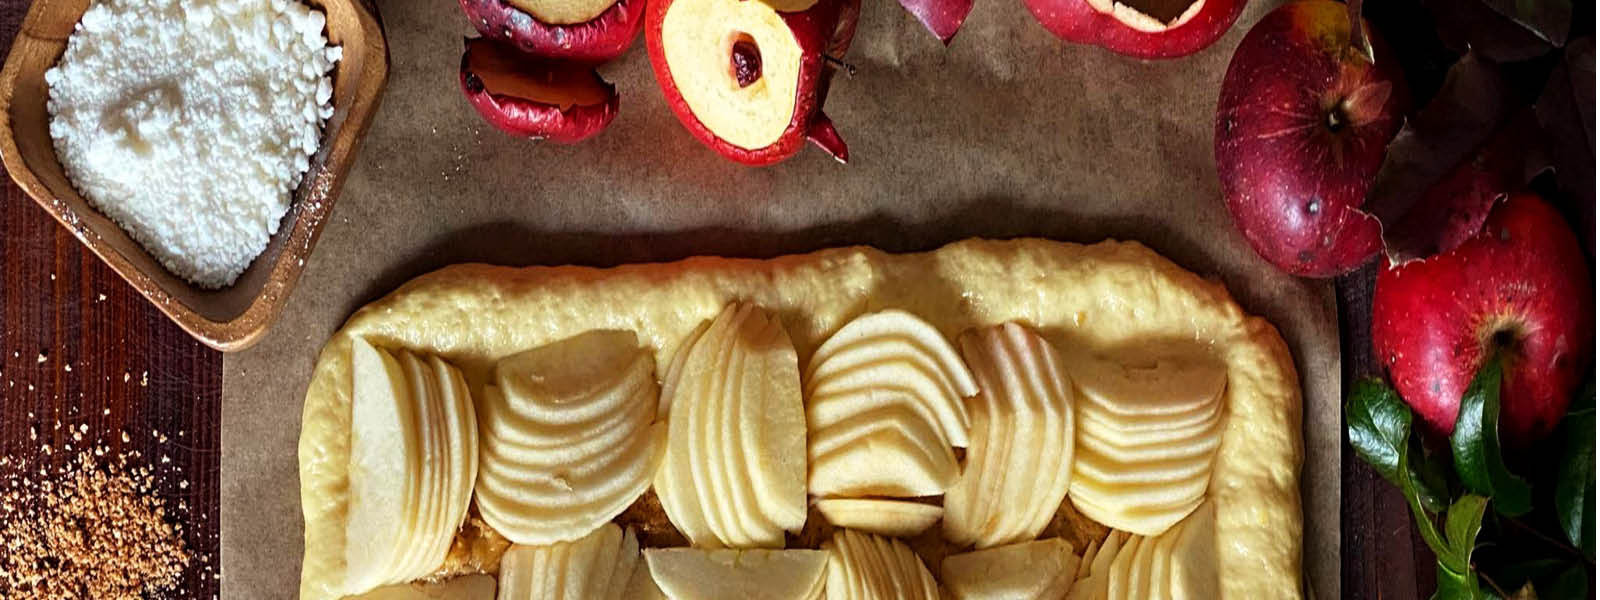 Šachovnice - kynutý koláč s jablky